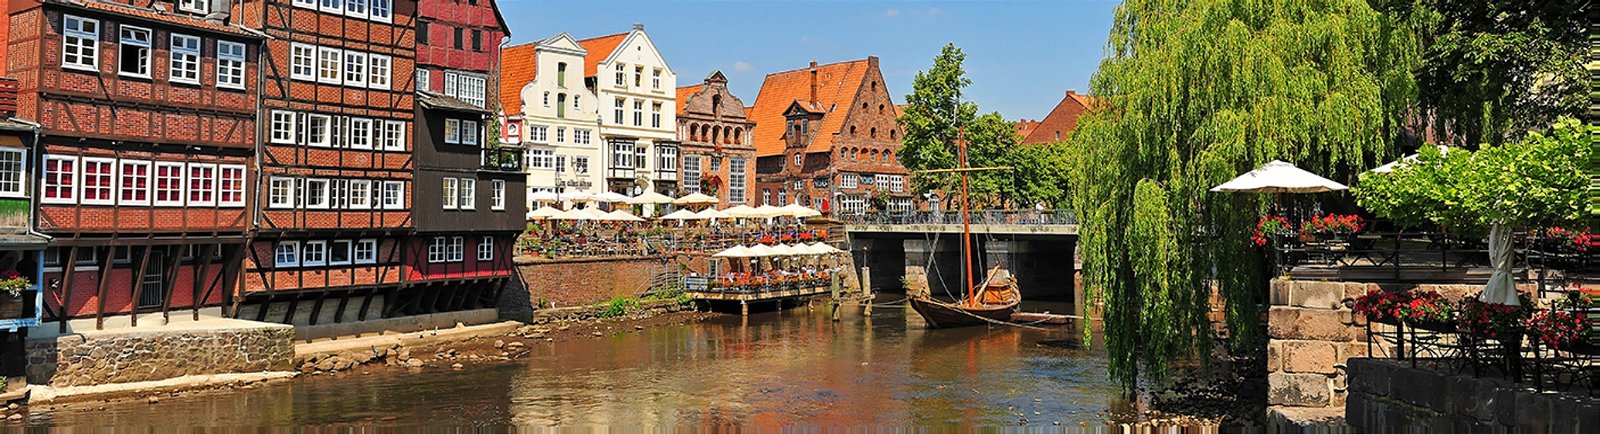 Städtereise nach Lüneburg